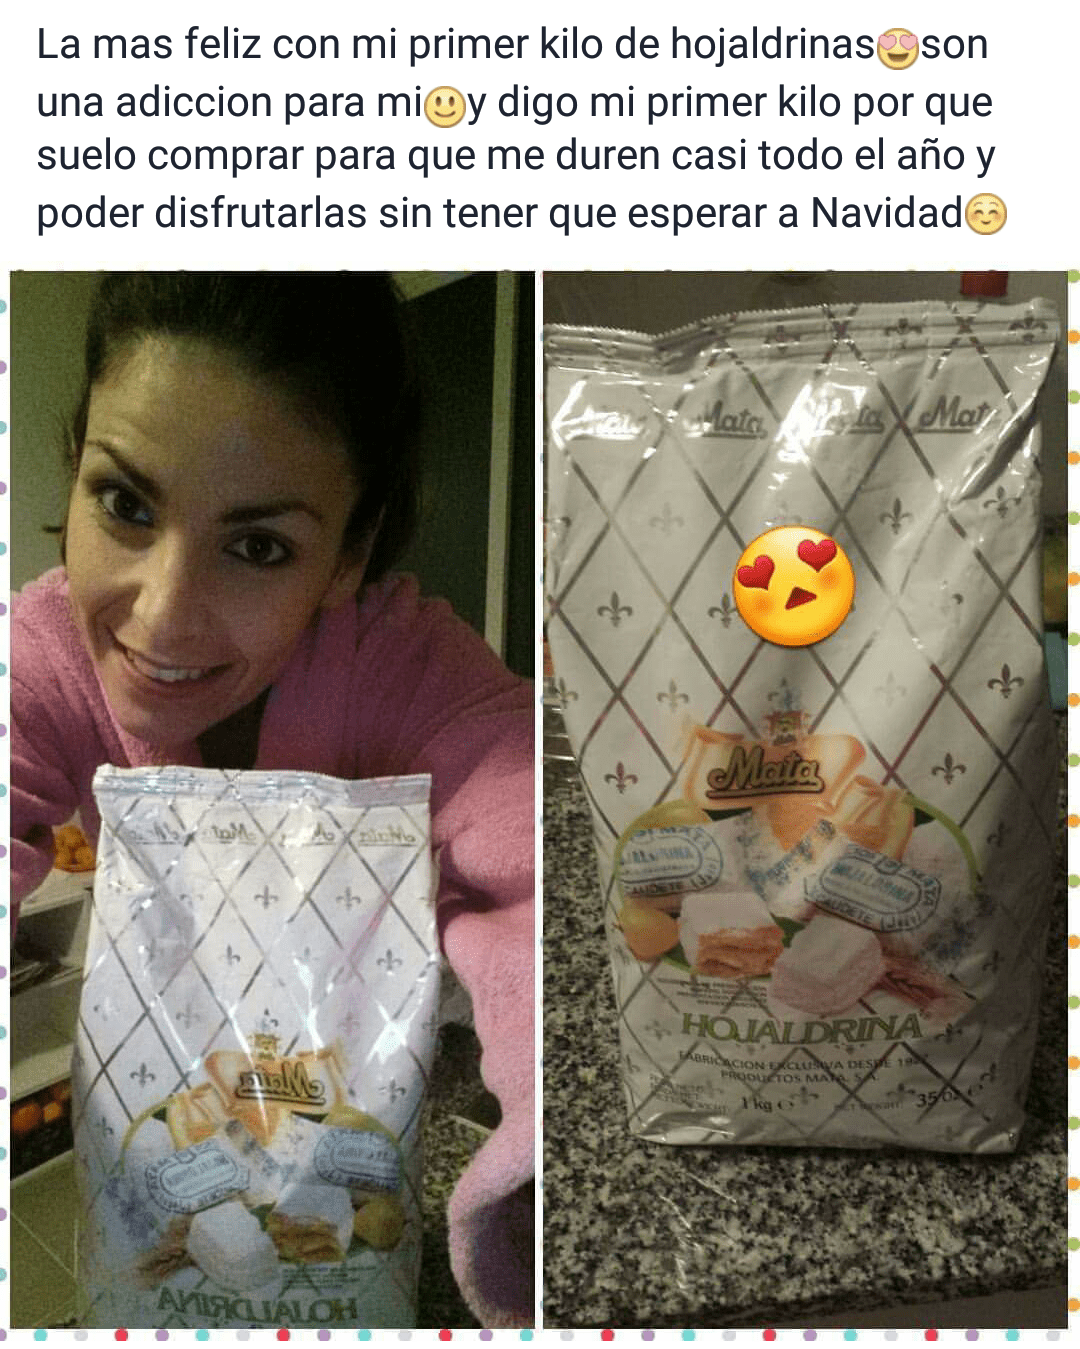 Verónica de Amo Román nos envía una fotografía con sus primeras Hojaldrinas® de Mata. Muchas gracias por el comentario. ¡Disfruta!